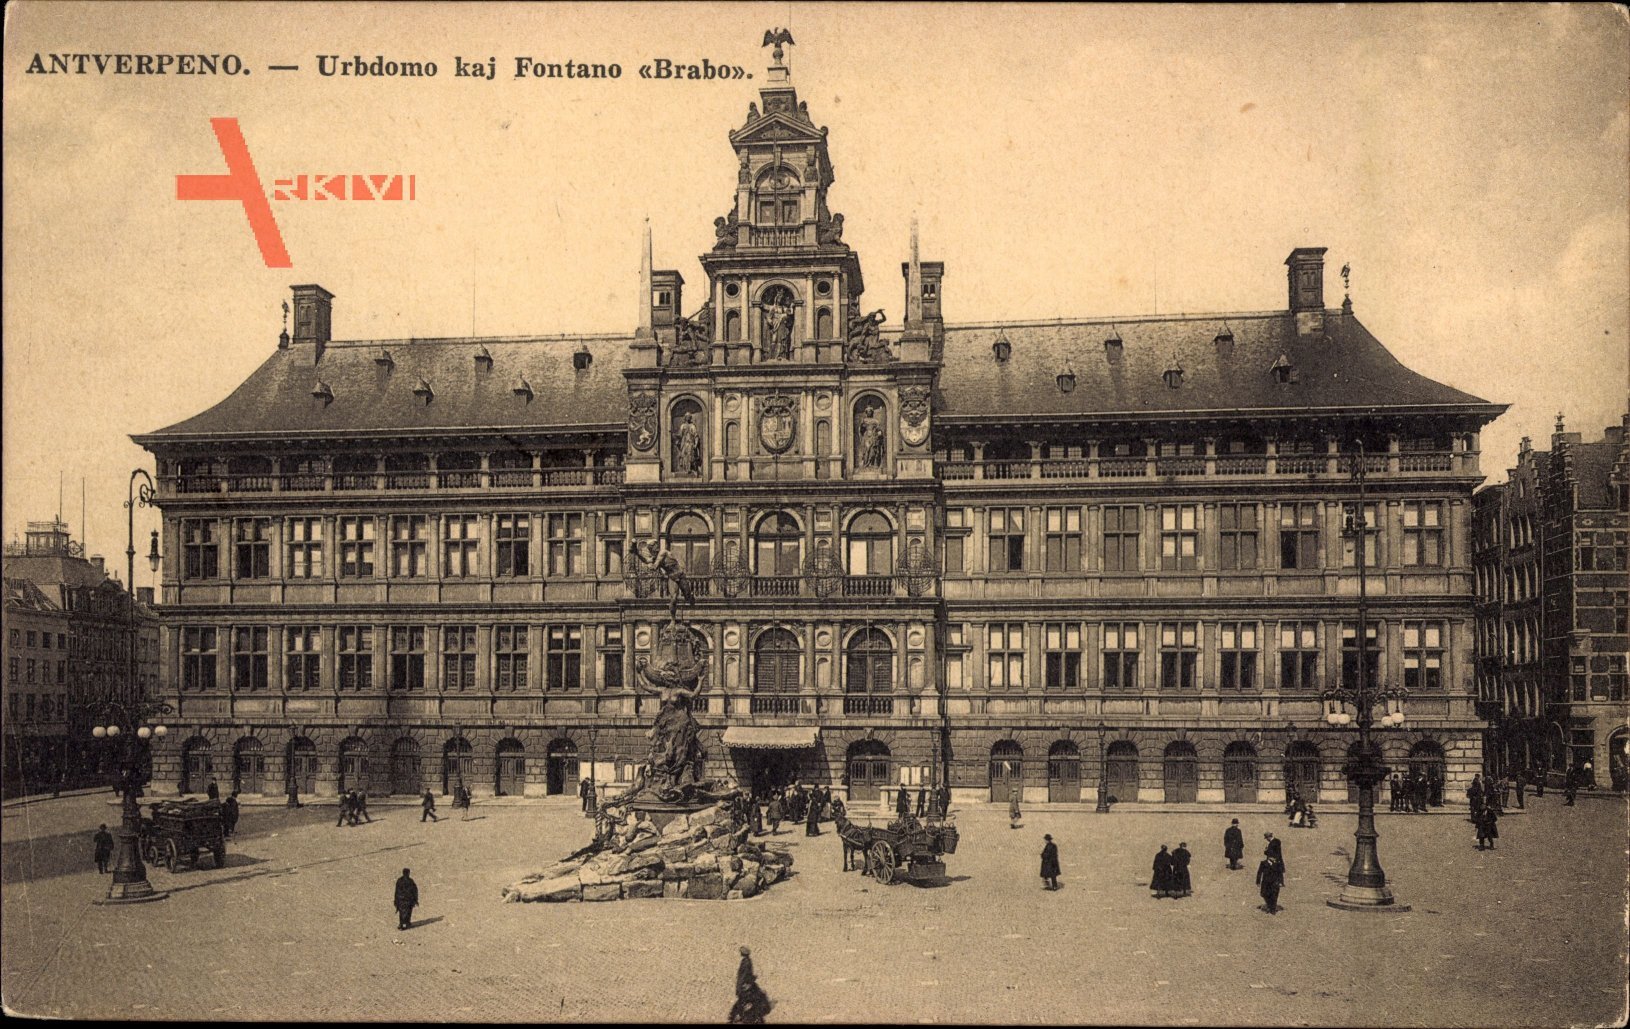 Antwerpen Flandern, Urbdomo kaj Fontano Brabo, Rathaus, Fontäne, Esperanto